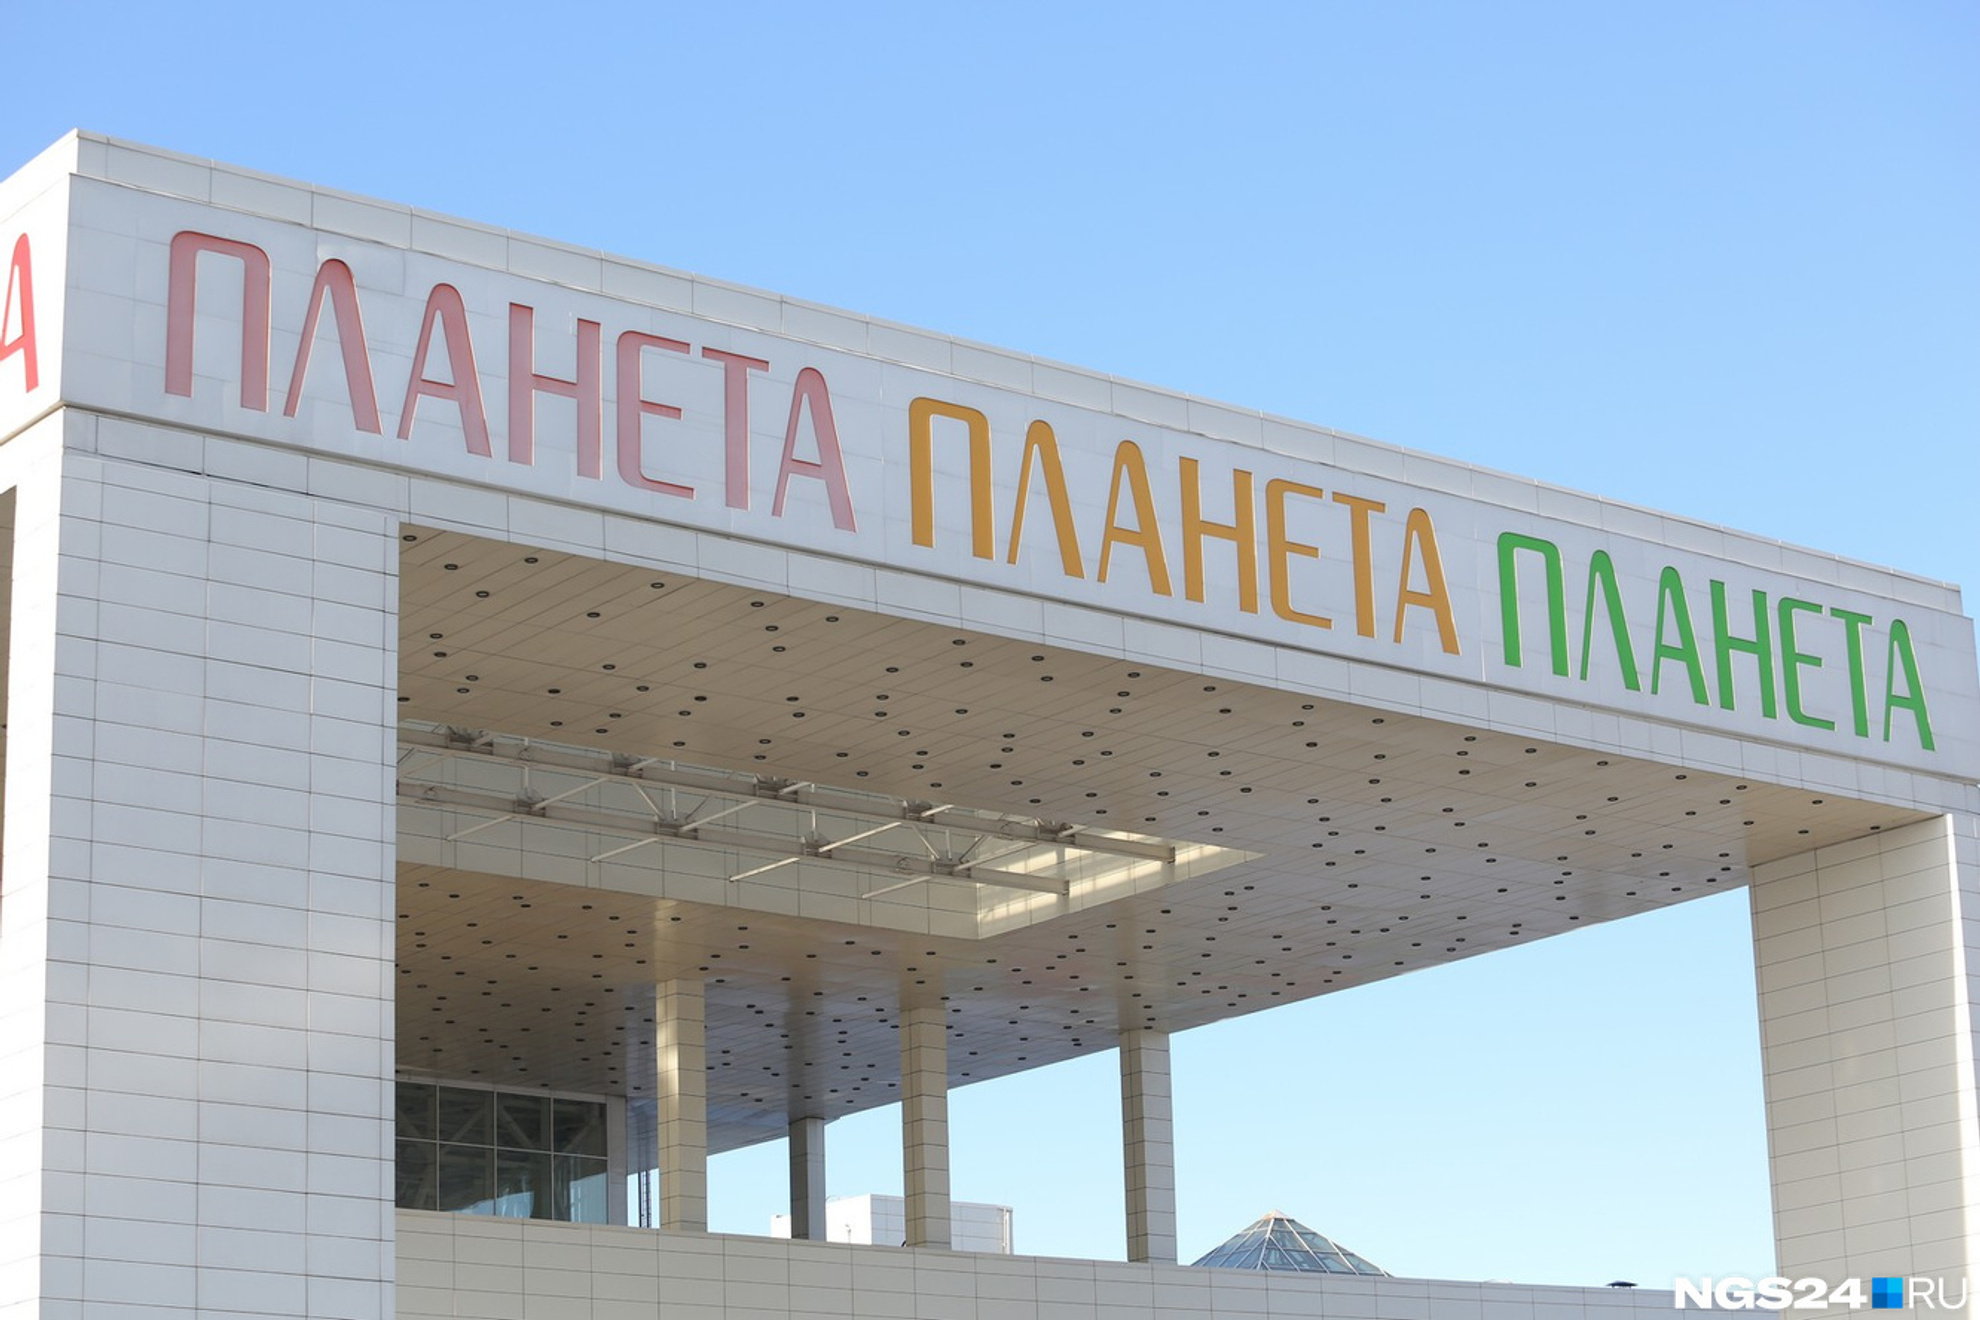 ТРЦ «Планета» — одна из крупнейших торговых площадок в Красноярске